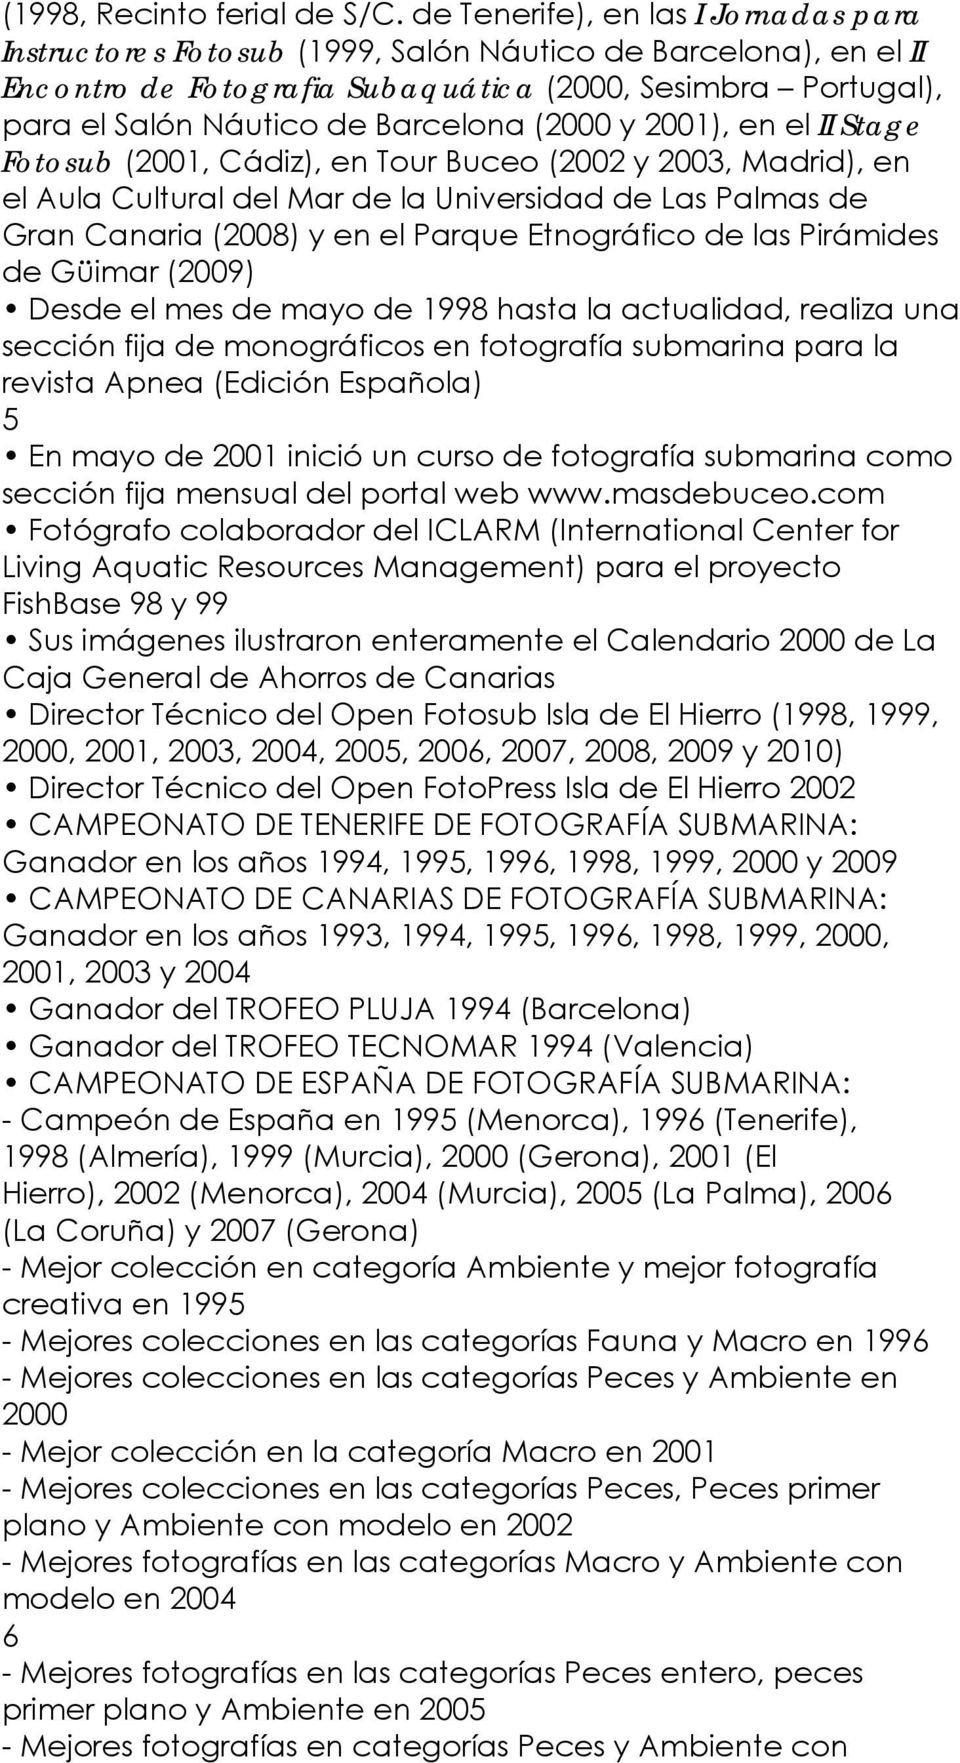 (2000 y 2001), en el II Stage Fotosub (2001, Cádiz), en Tour Buceo (2002 y 2003, Madrid), en el Aula Cultural del Mar de la Universidad de Las Palmas de Gran Canaria (2008) y en el Parque Etnográfico